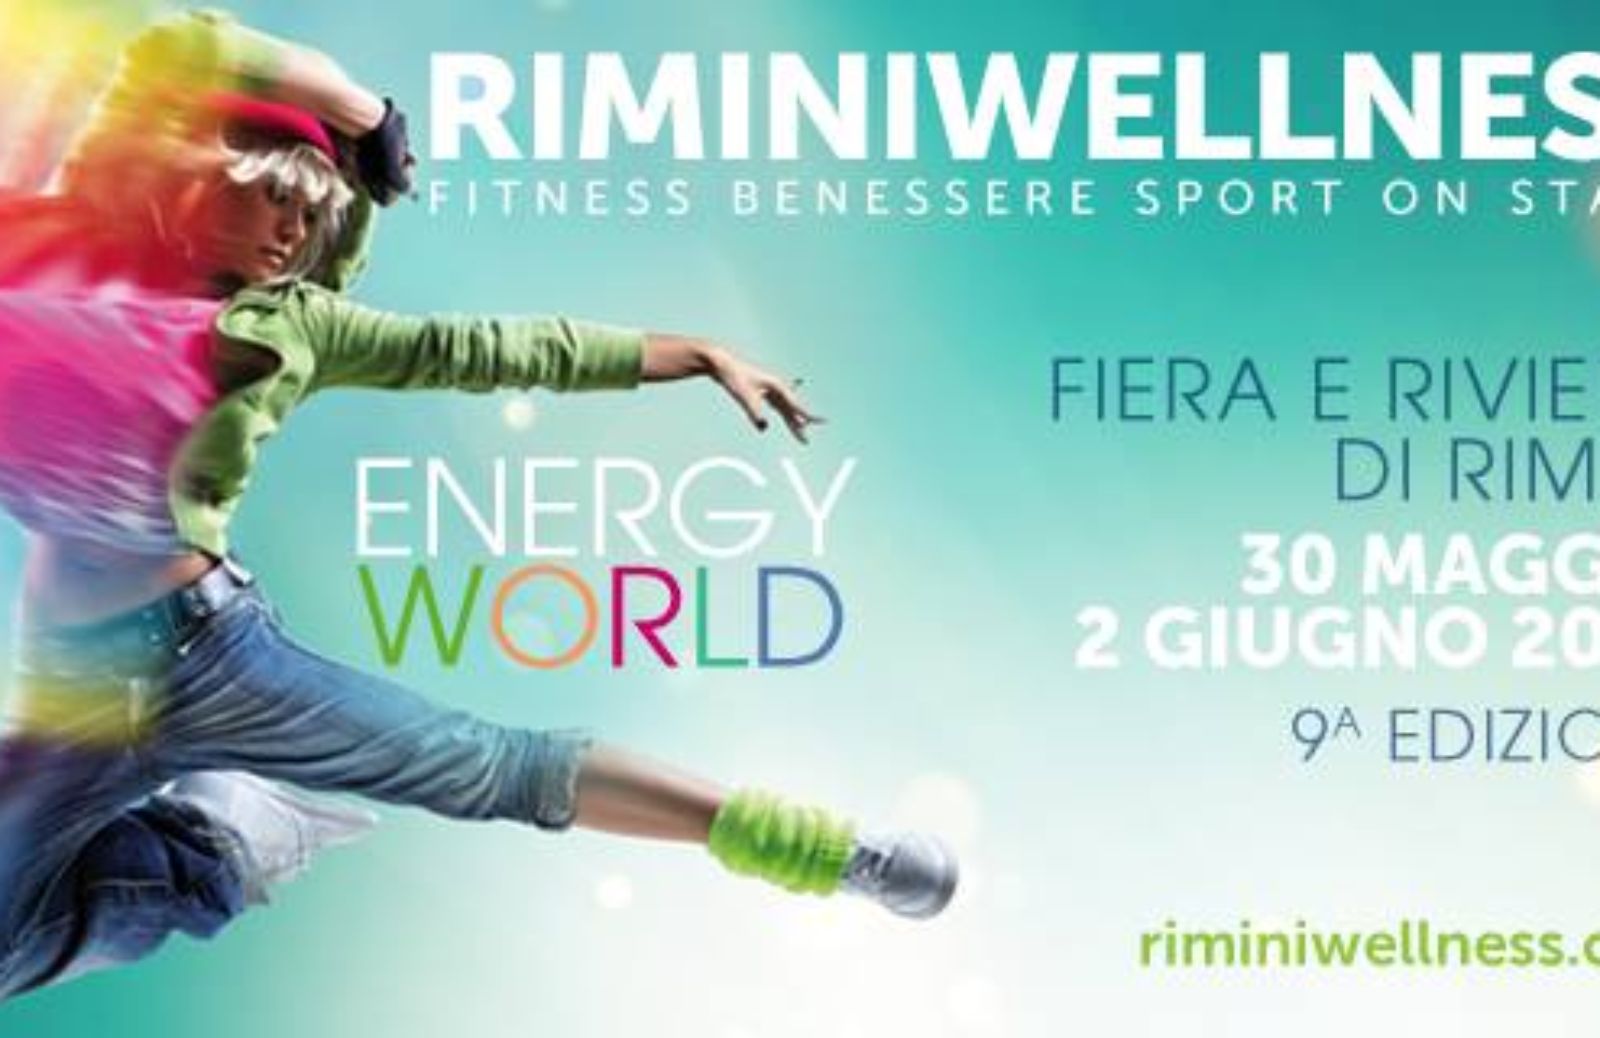 Riminiwellness, torna a Rimini la fiera del fitness